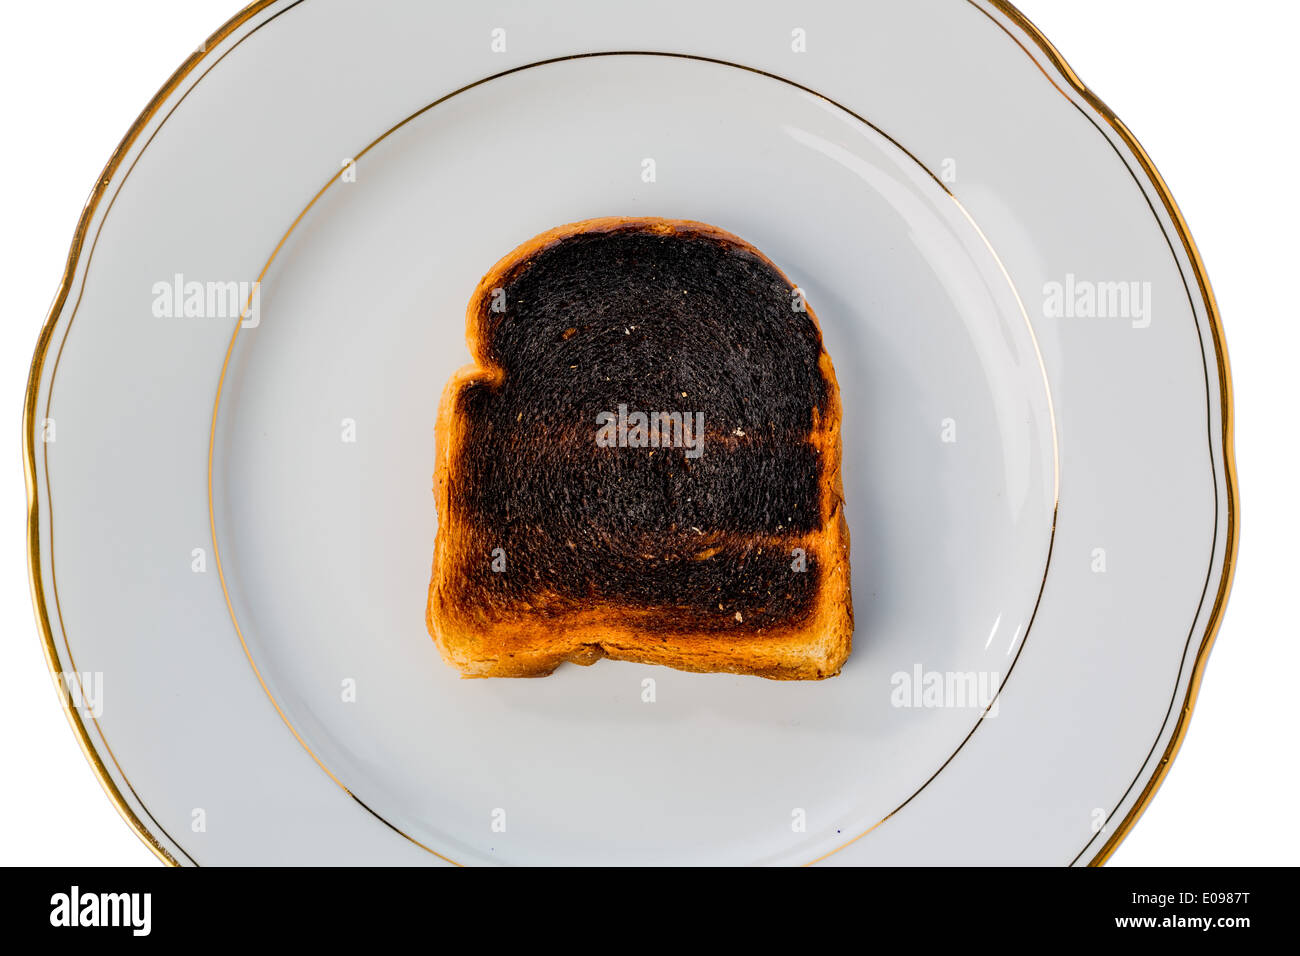 Toastbrot wurde mit Getränk einen Toast burntly. Burntly toast Scheiben mit Frühstück., Toastbrot Wurde Beim Toasten Verbrannt. Stockfoto